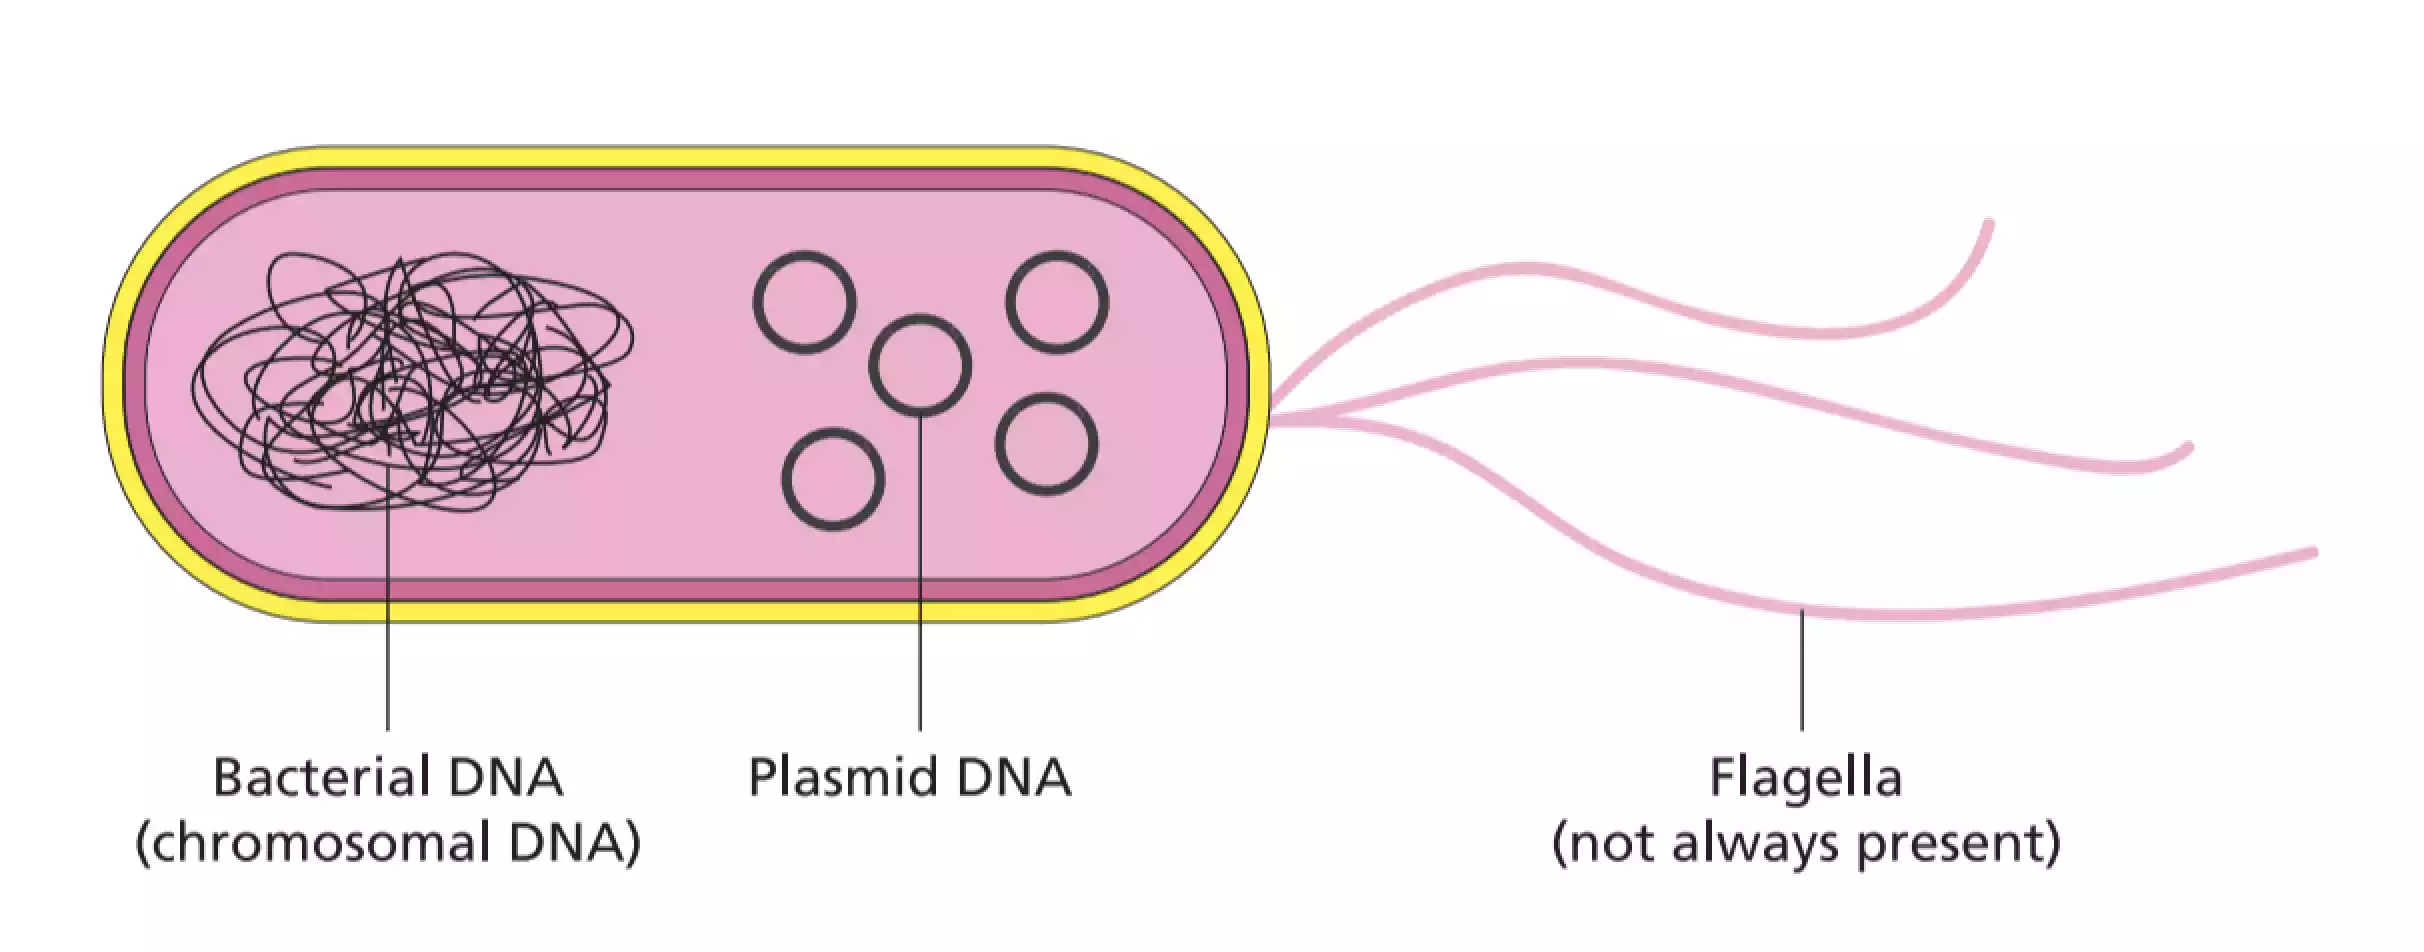 plasmids